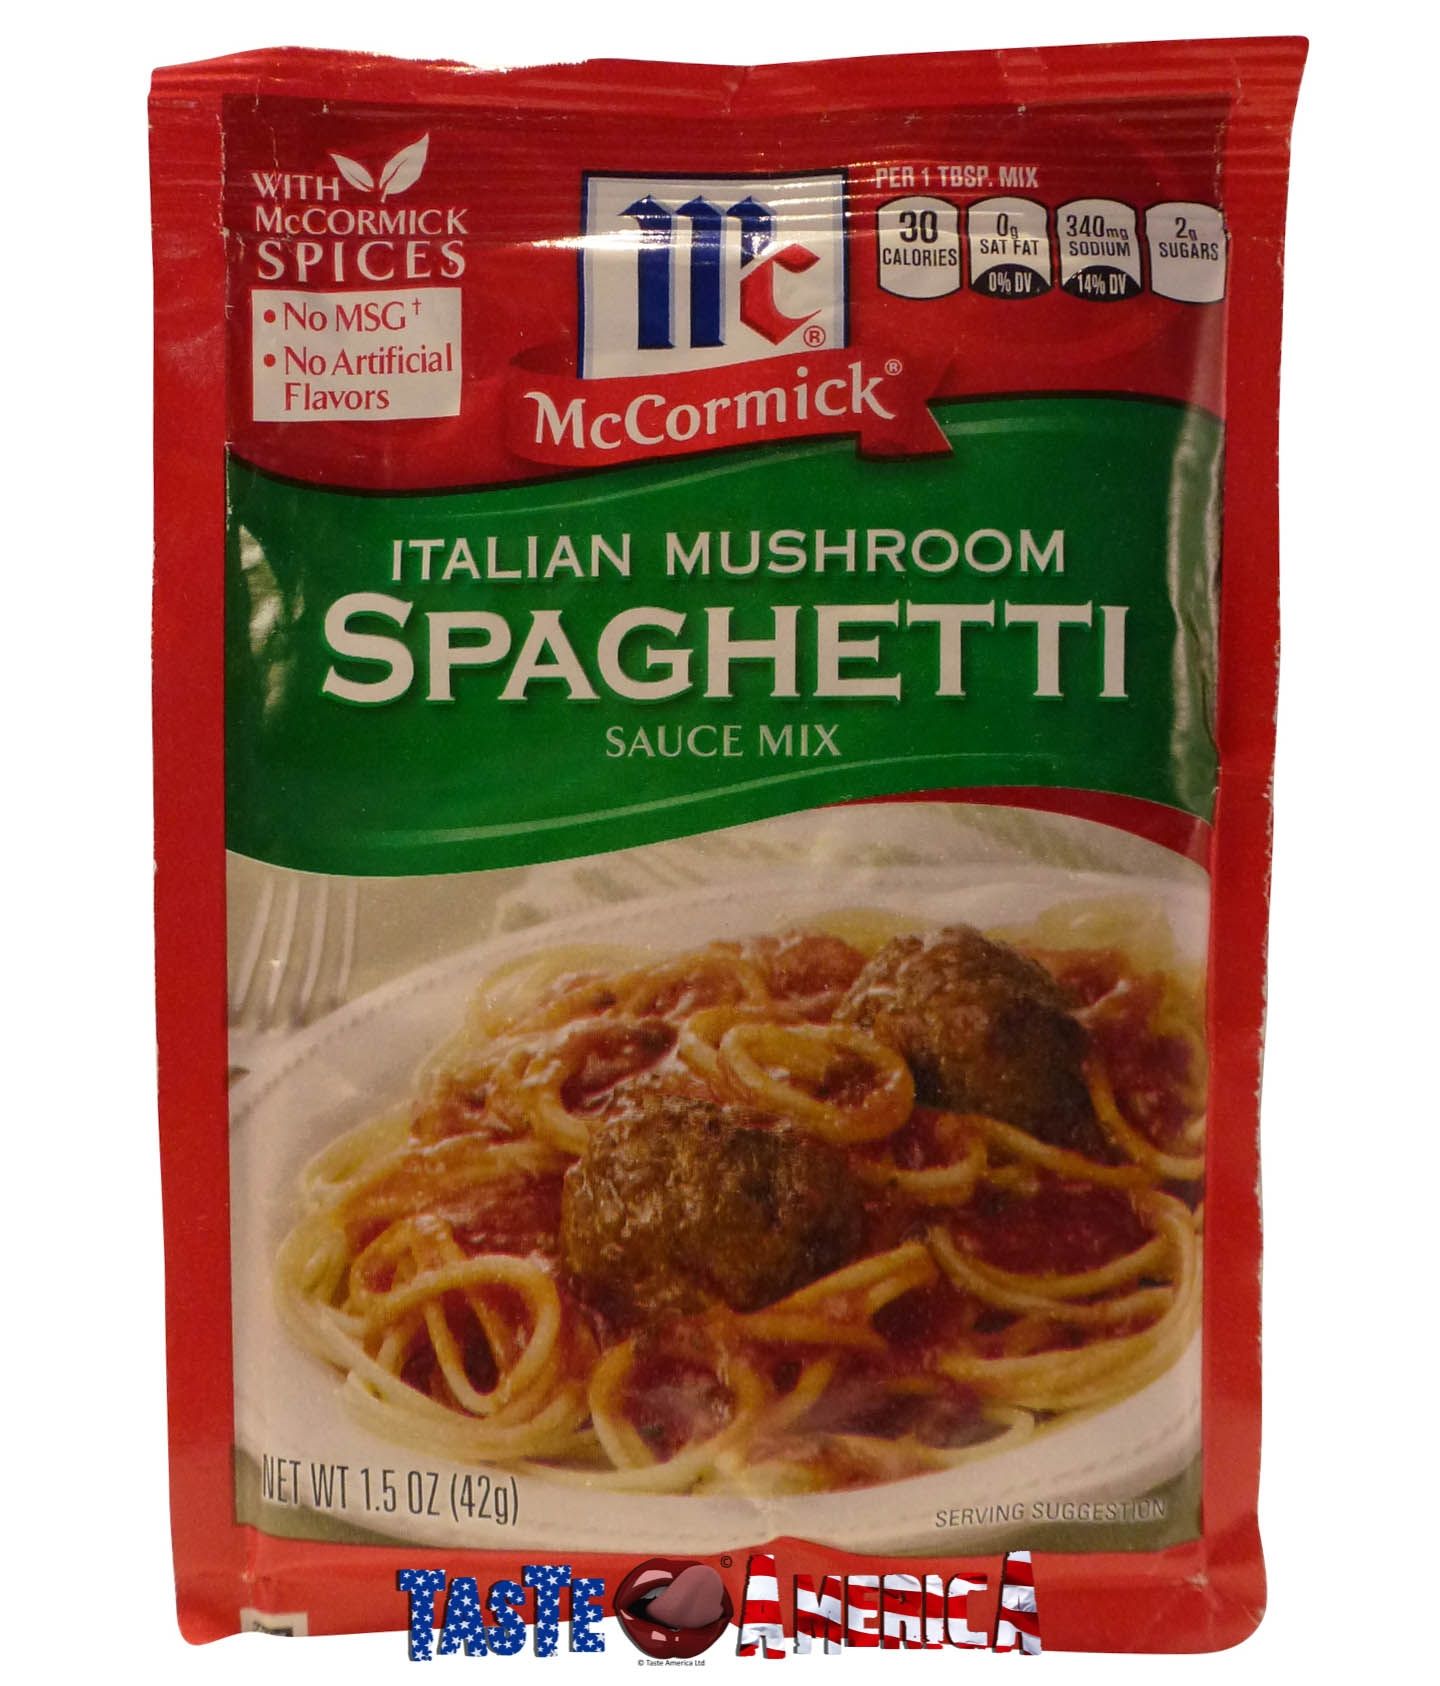 https://www.tasteamerica.co.uk/media/catalog/product/cache/b78bd81bd14f73c831b1cdd2bb6b6fb0/m/c/mccormick_italian_mushroom_spaghetti_sauce_mix_42g_-_052100091402.jpg